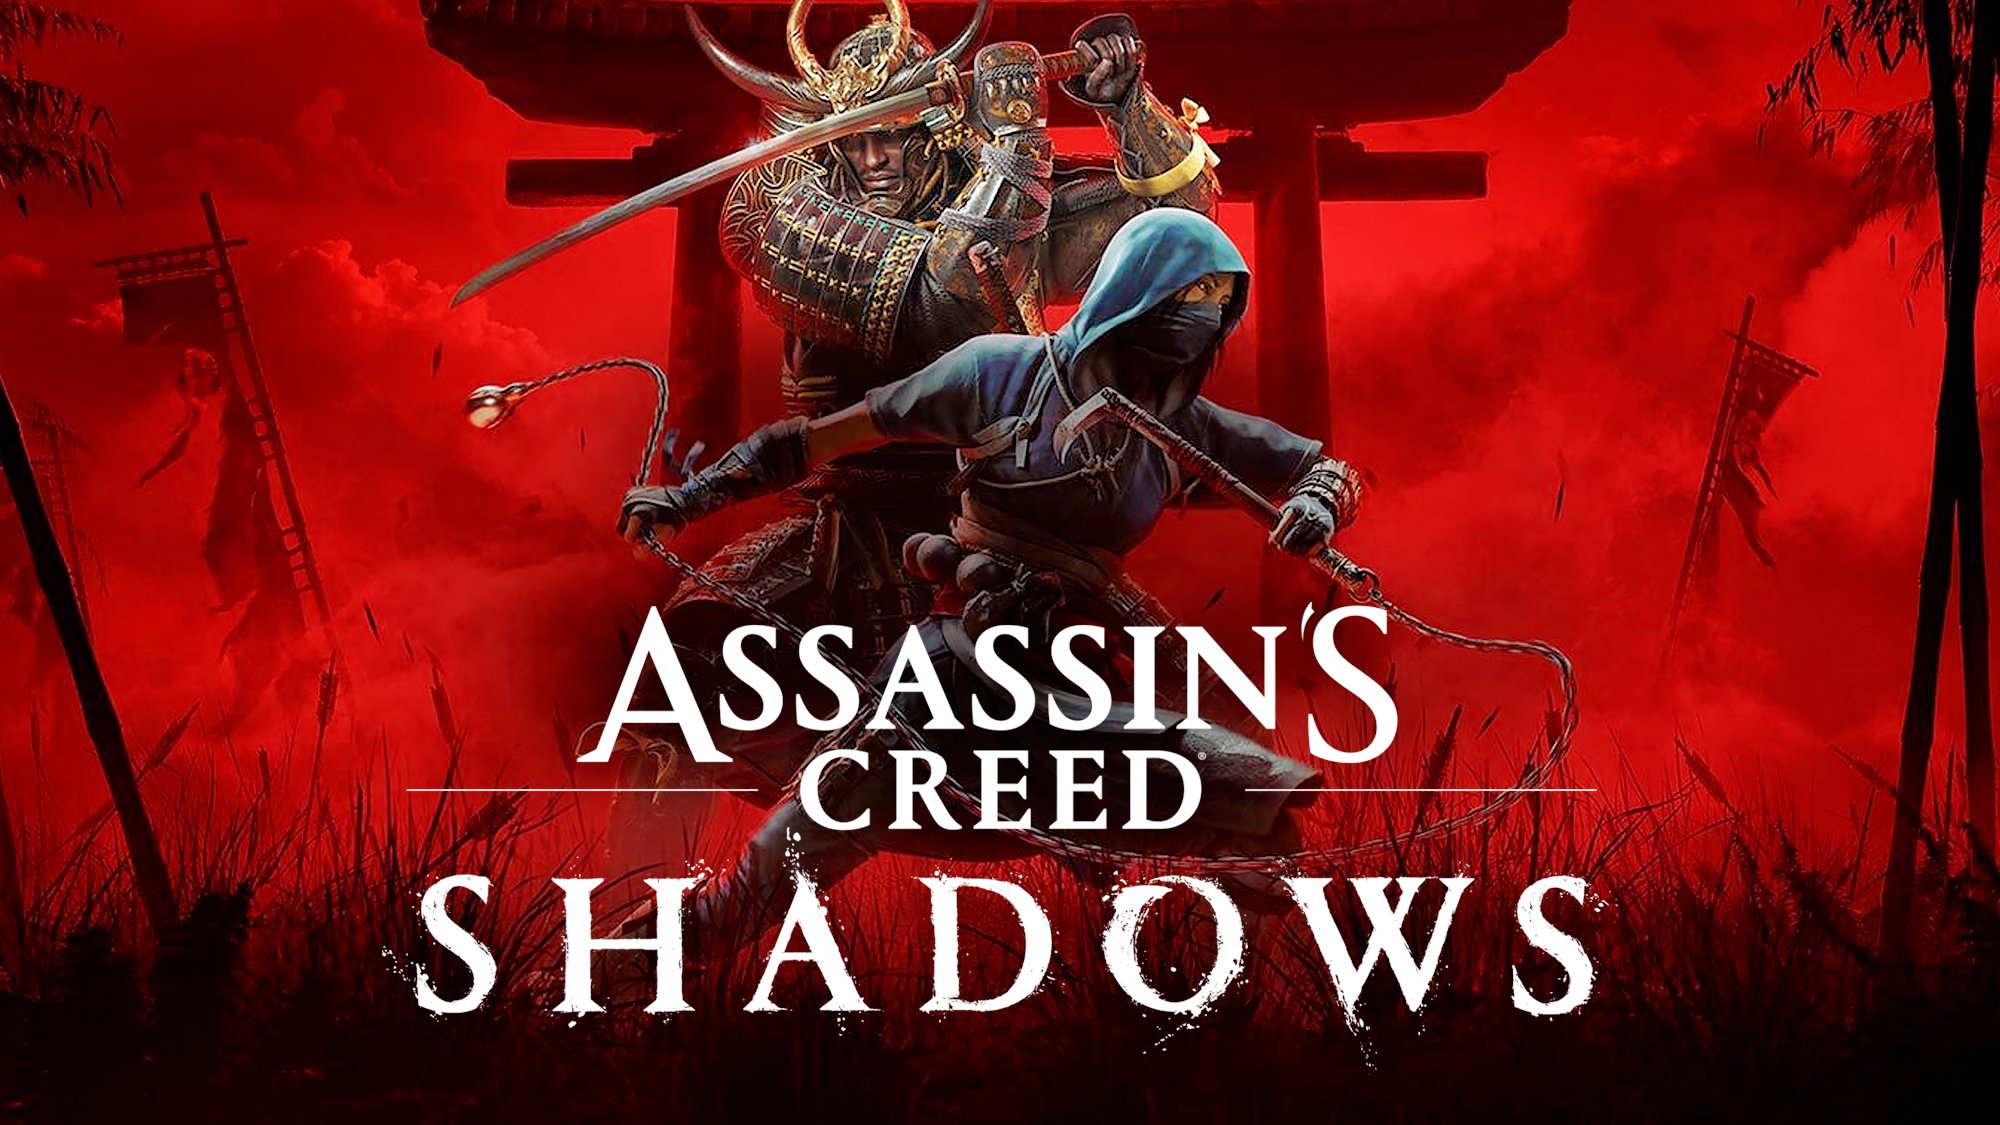 Assassin's Creed Shadows cartonne avant sa sortie malgré les polémiques